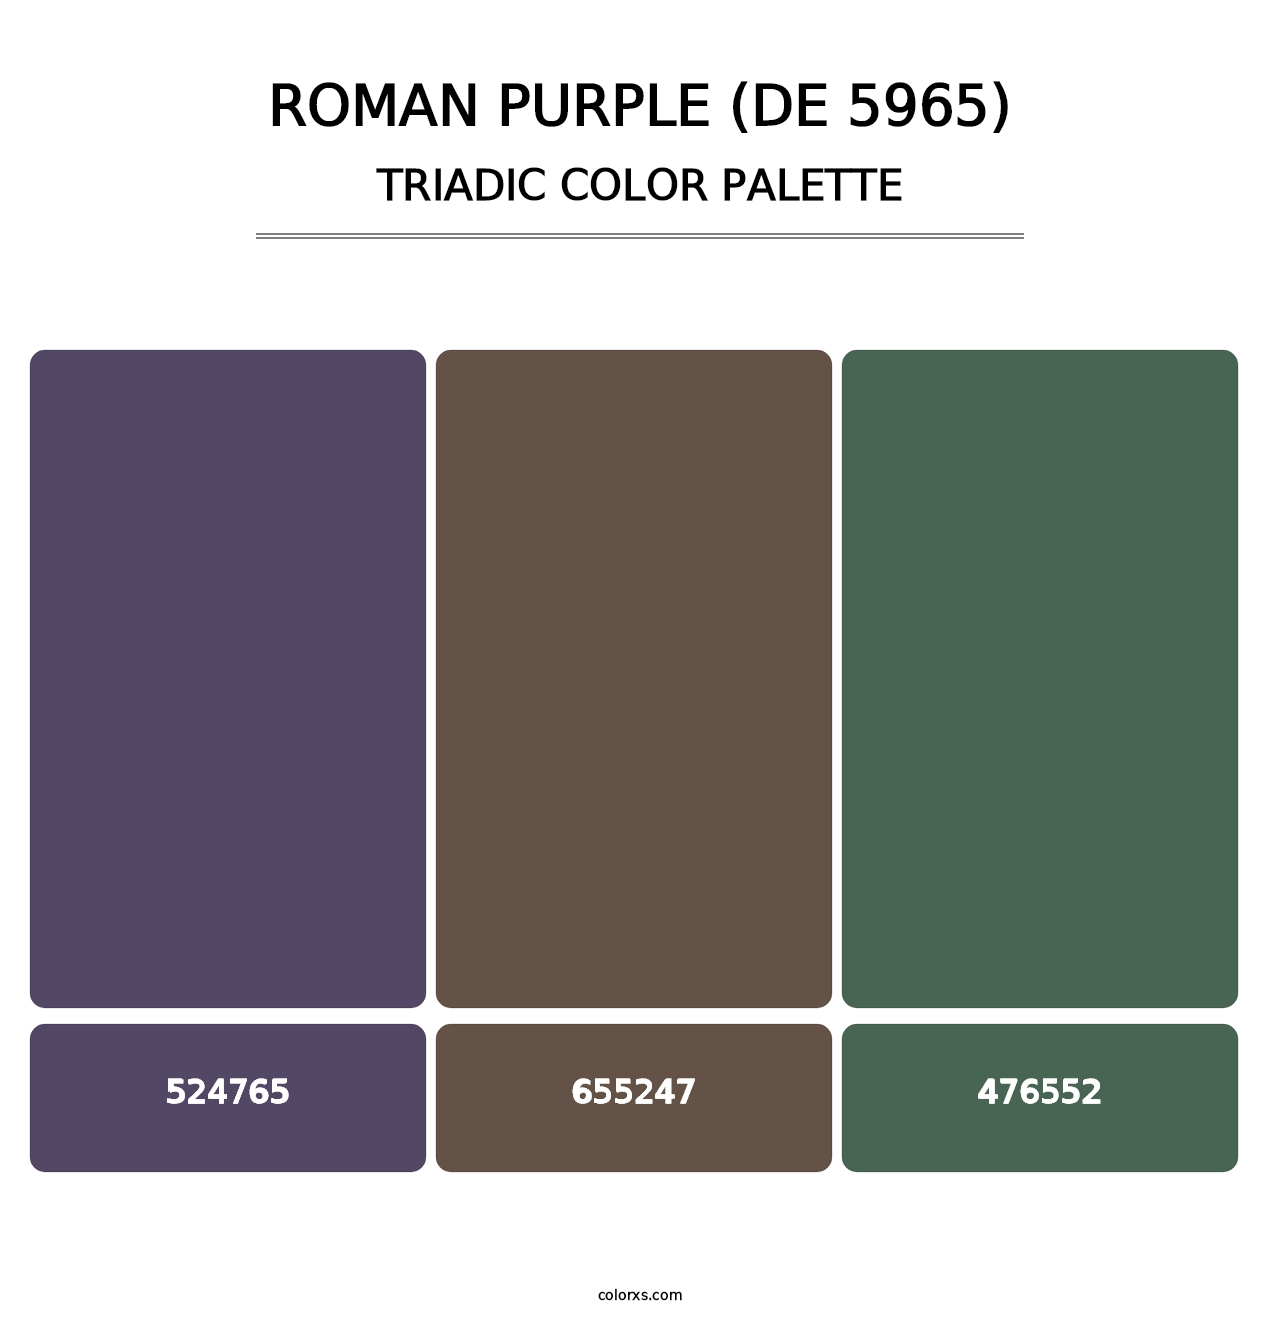 Roman Purple (DE 5965) - Triadic Color Palette